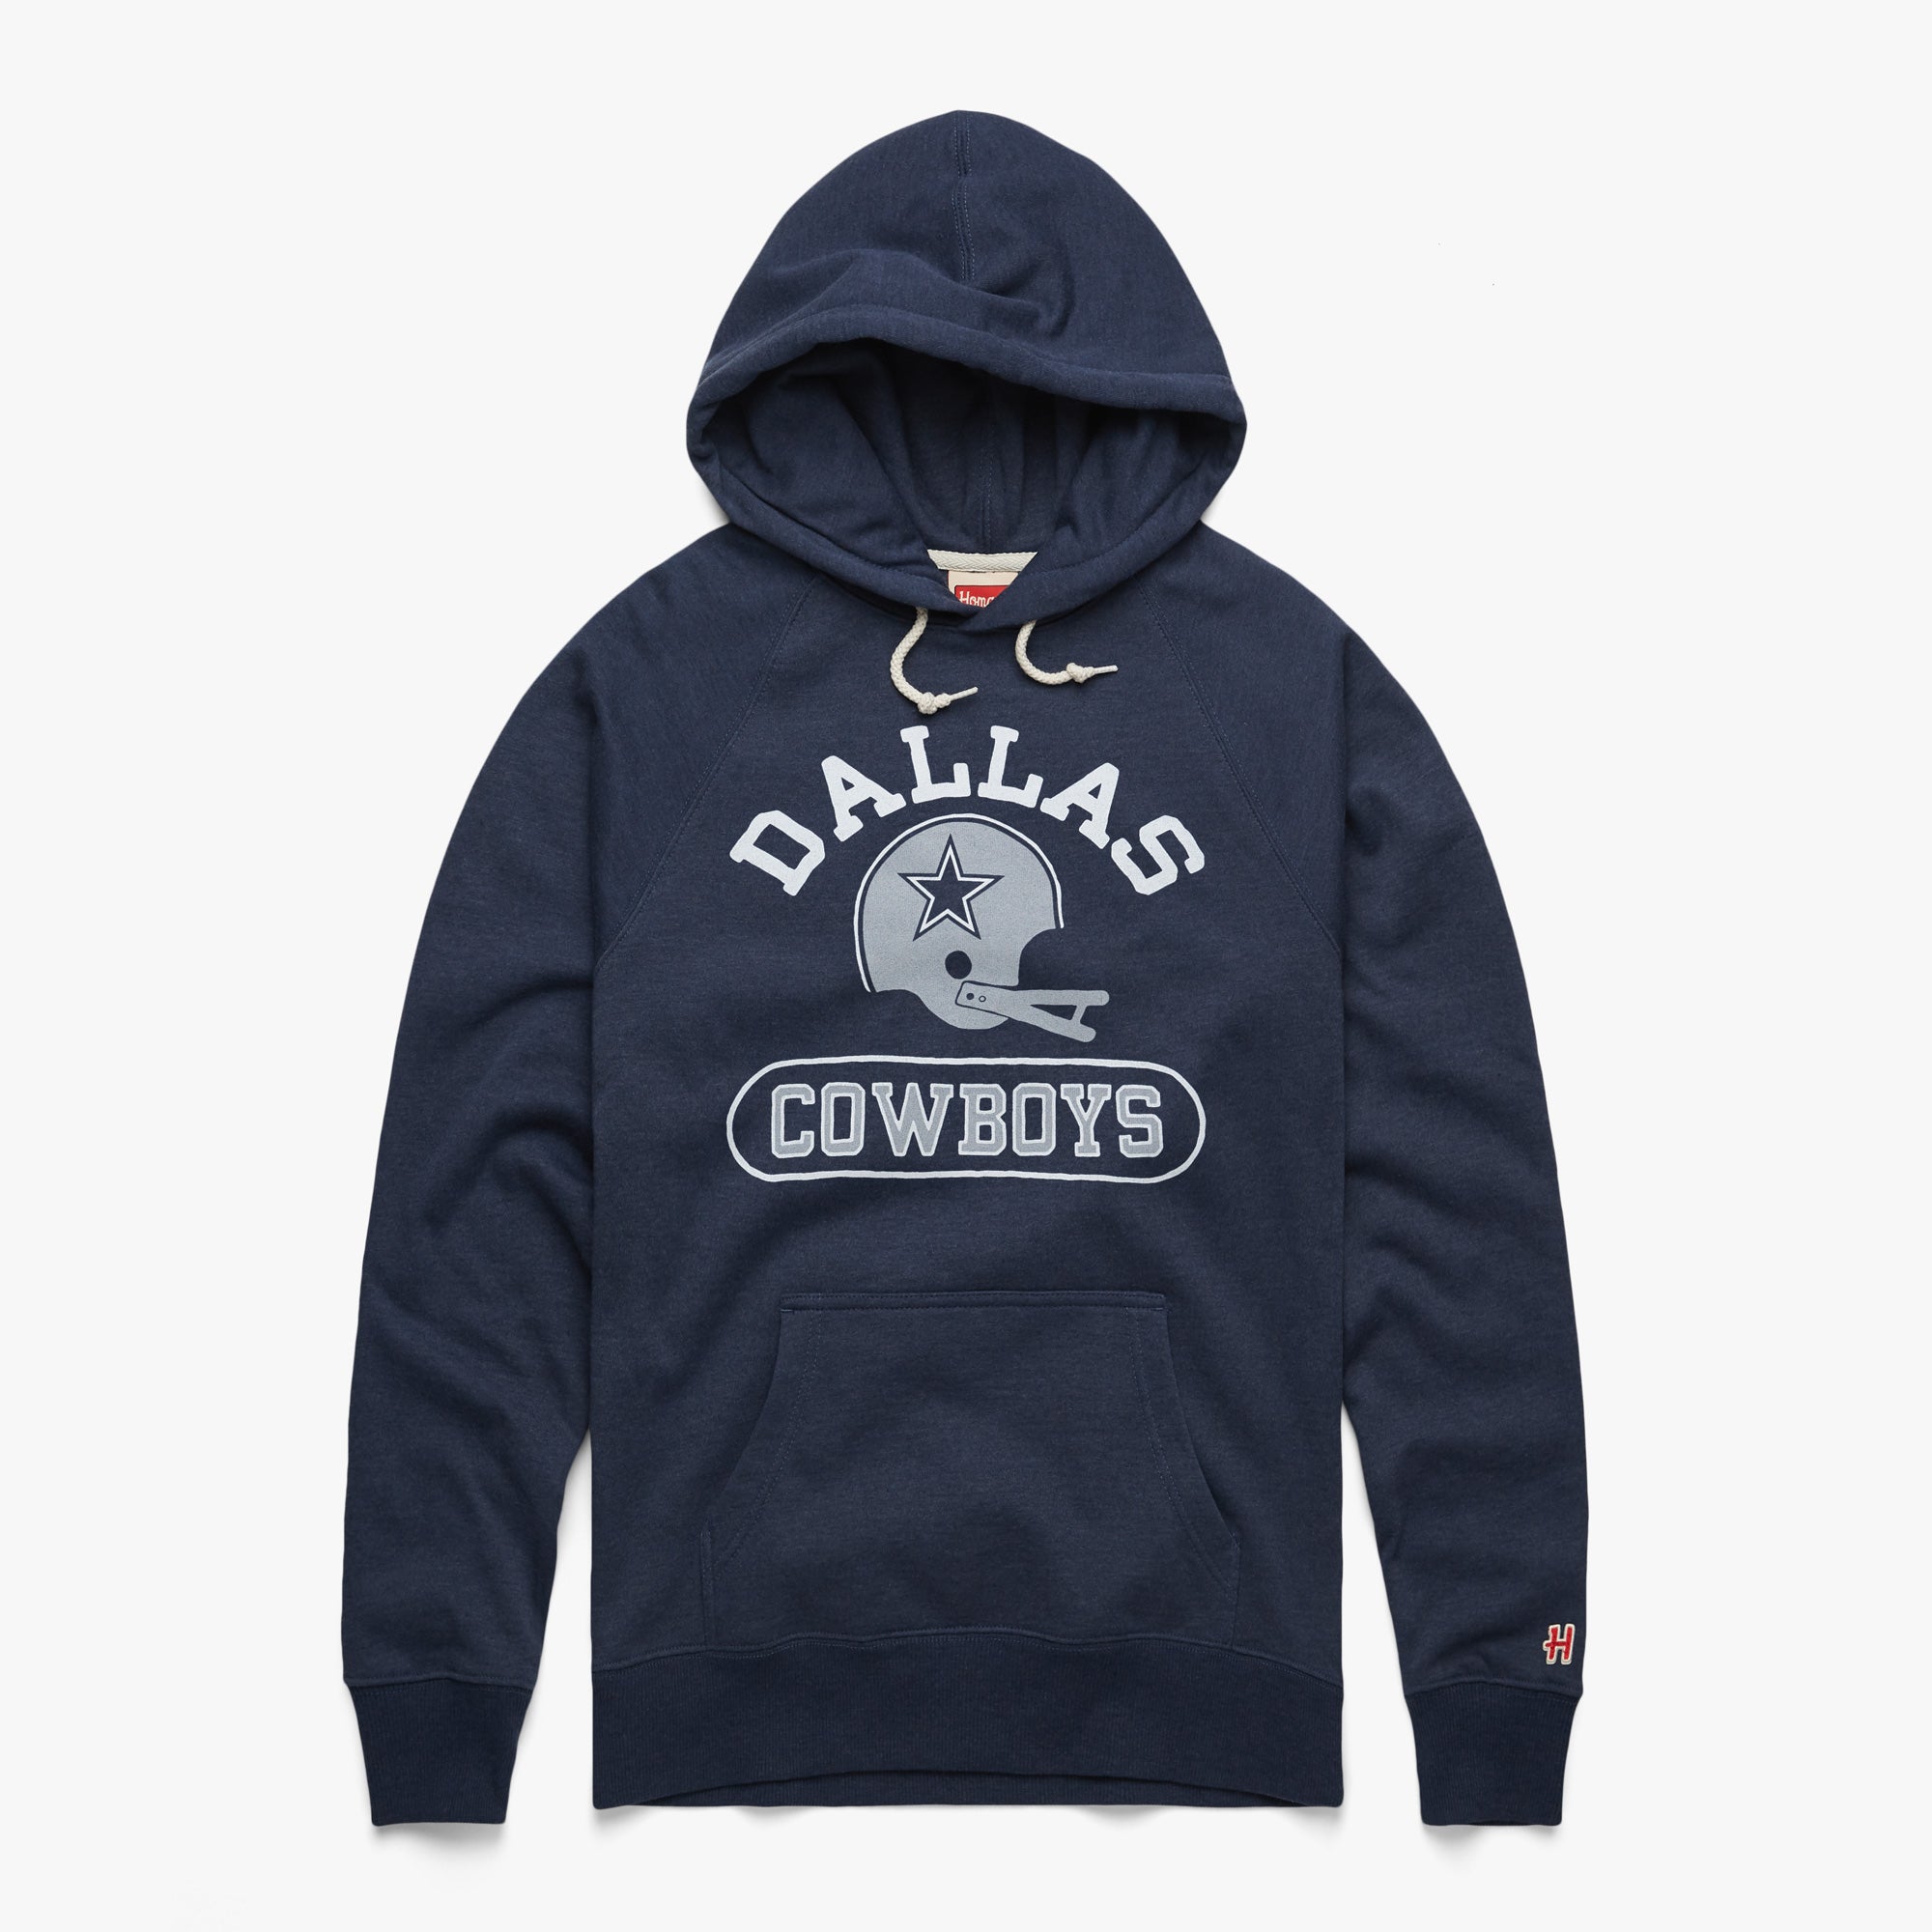  Dallas Cowboys Men's Standard Crew Fleece Sweatshirt